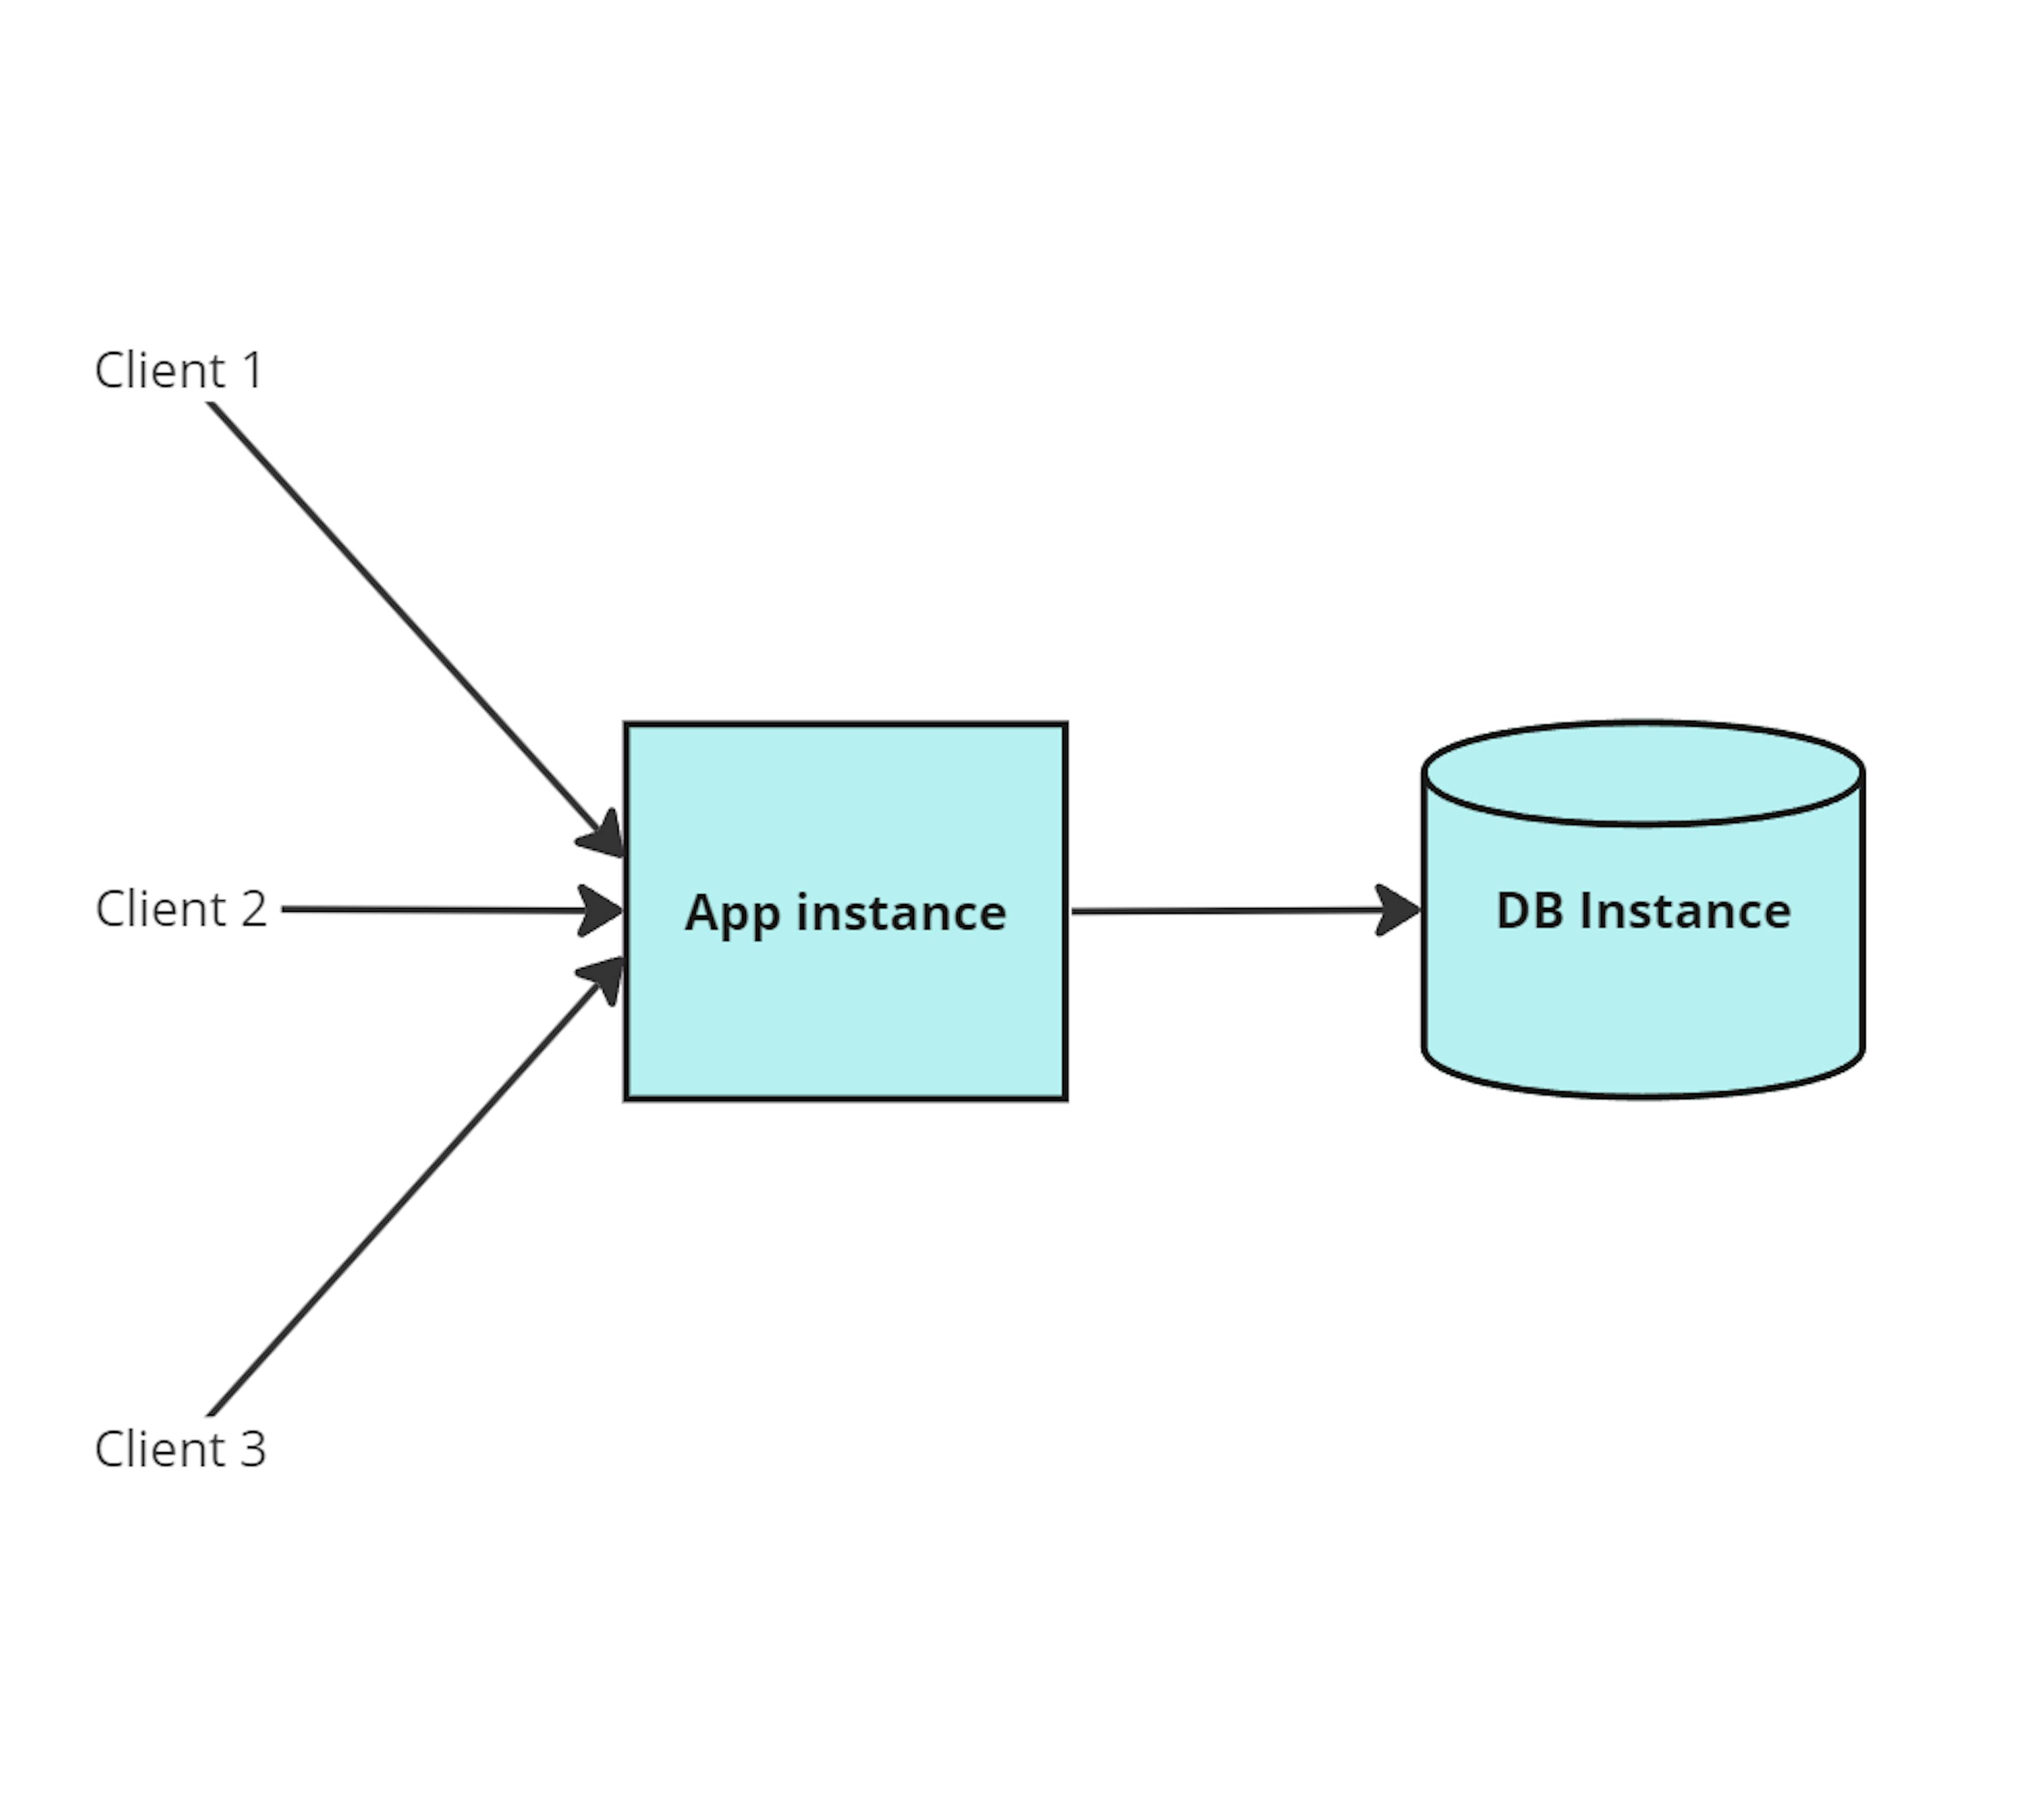 A arquitetura multilocatário com aplicativo compartilhado e instância de banco de dados